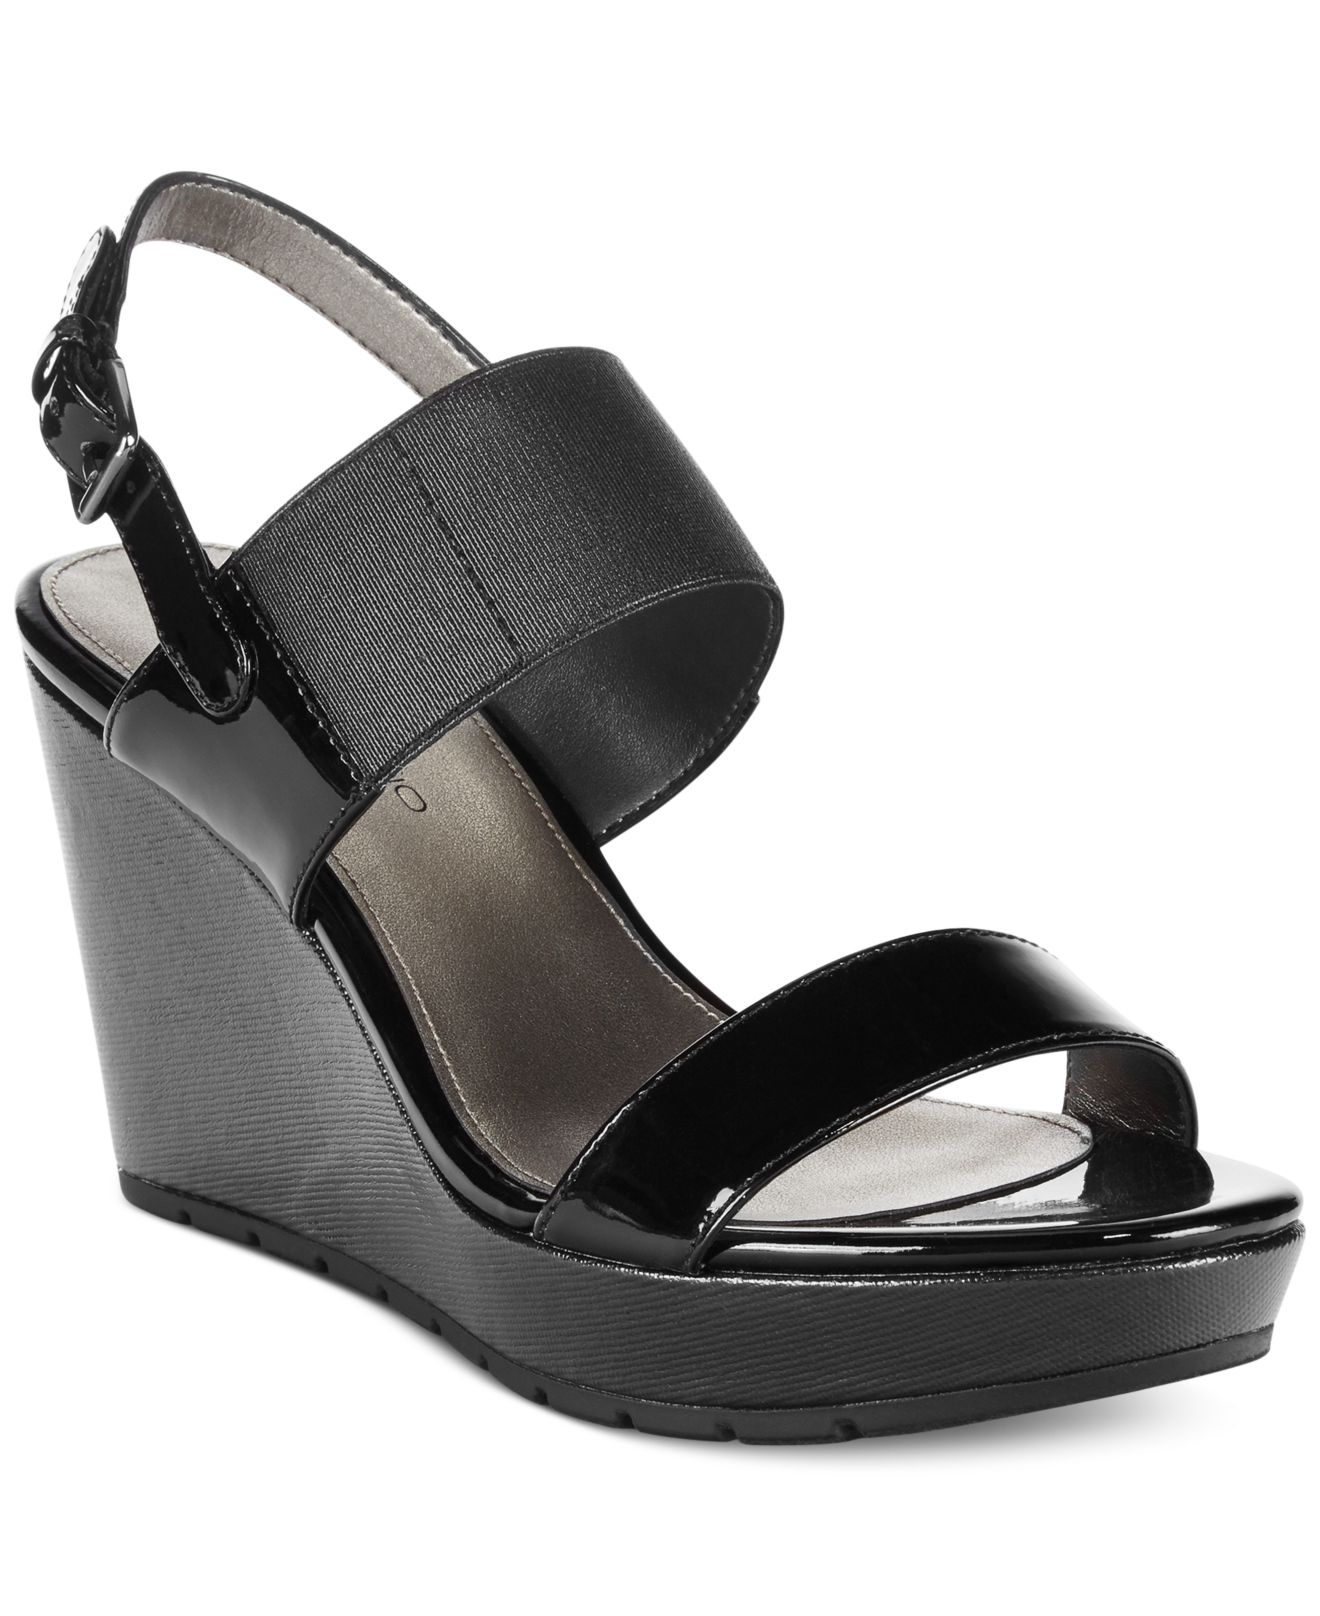 Lyst - Bandolino Annika Platform Wedge Sandals in Black